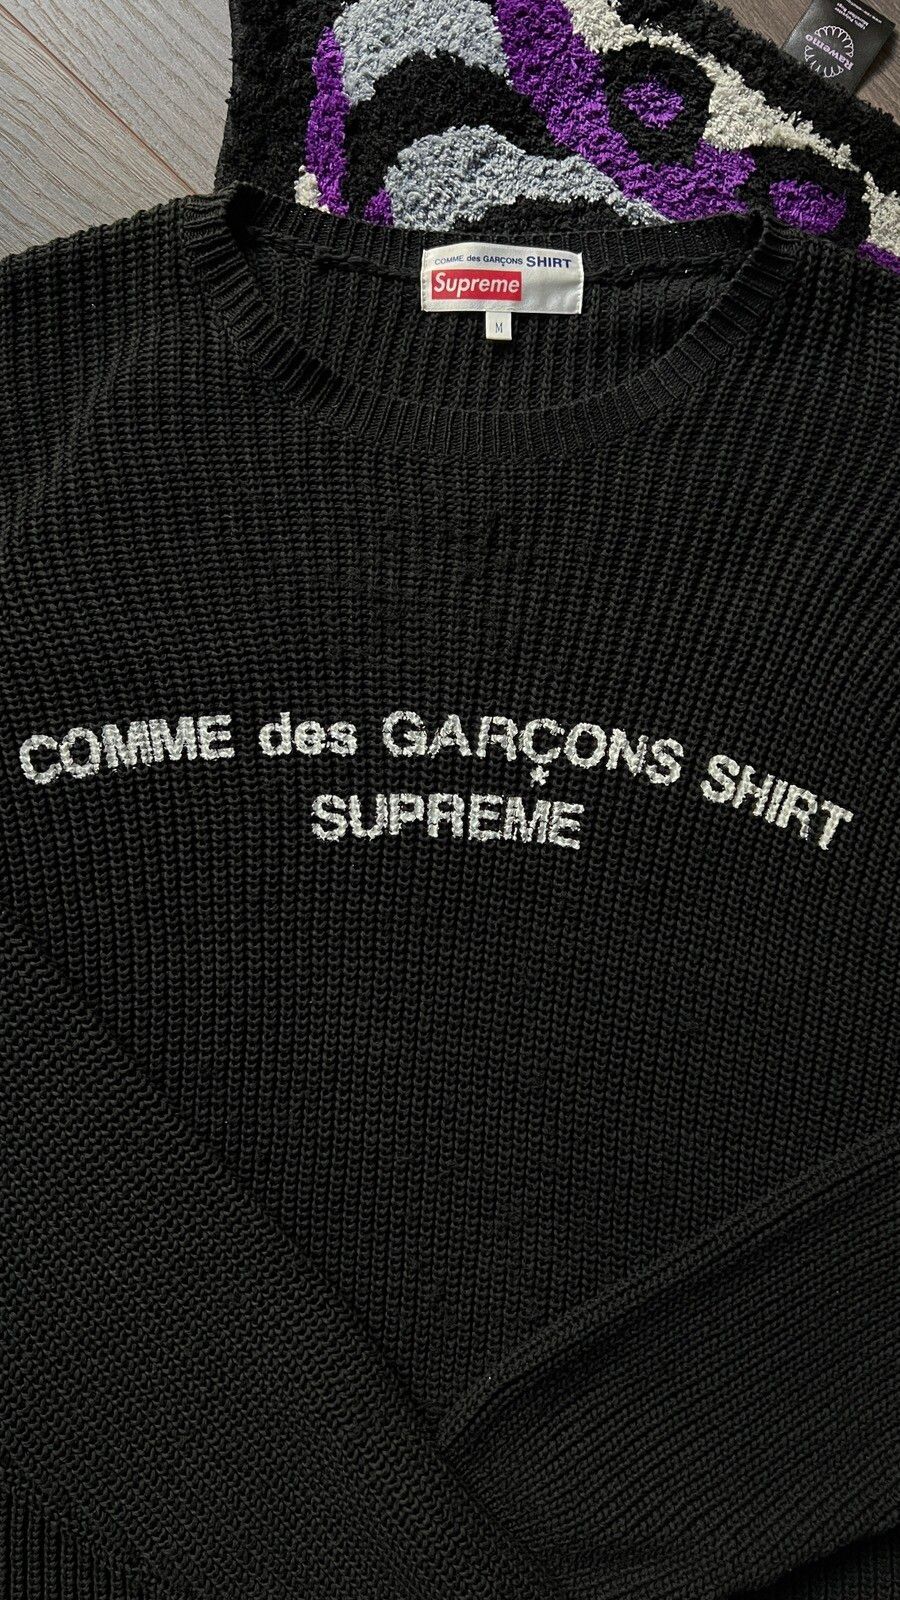 Supreme Supreme x Comme Des Garcons Size US M / EU 48-50 / 2 - 2 Preview